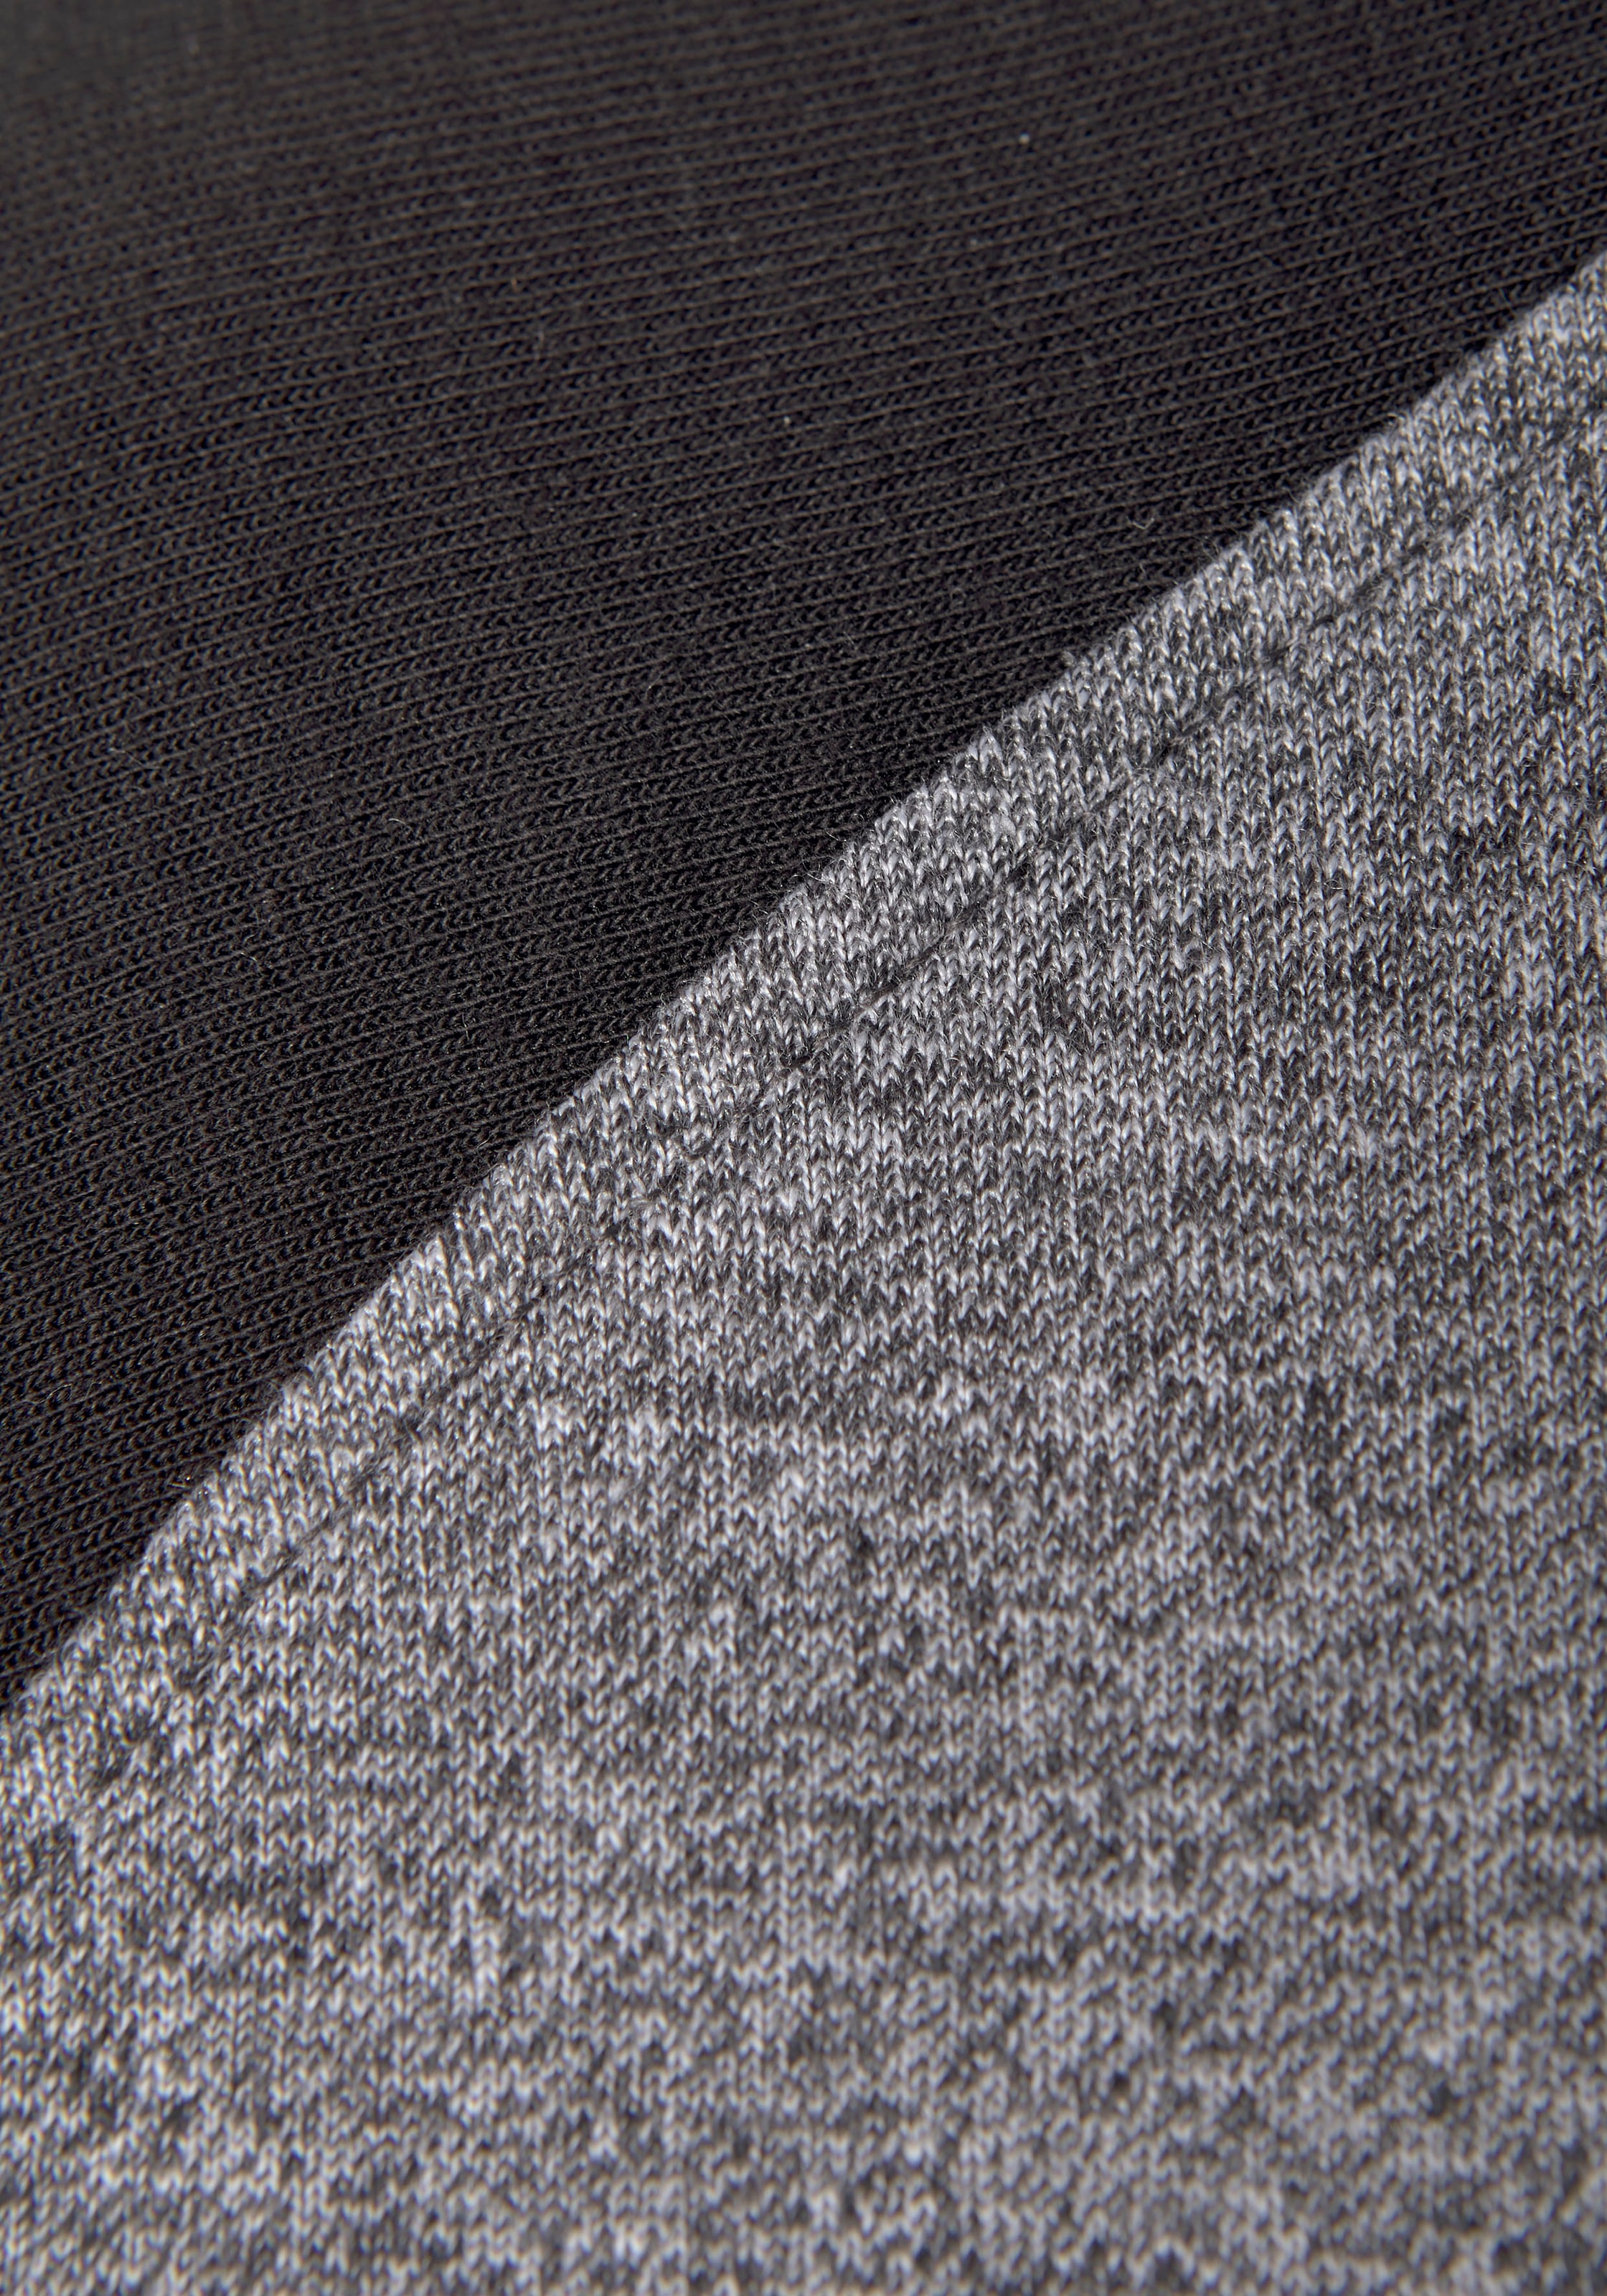 Bench. Loungewear Kapuzensweatshirt, mit farblich abgesetzten Ärmeln und  Logodruck, Loungeanzug, Hoodie online kaufen